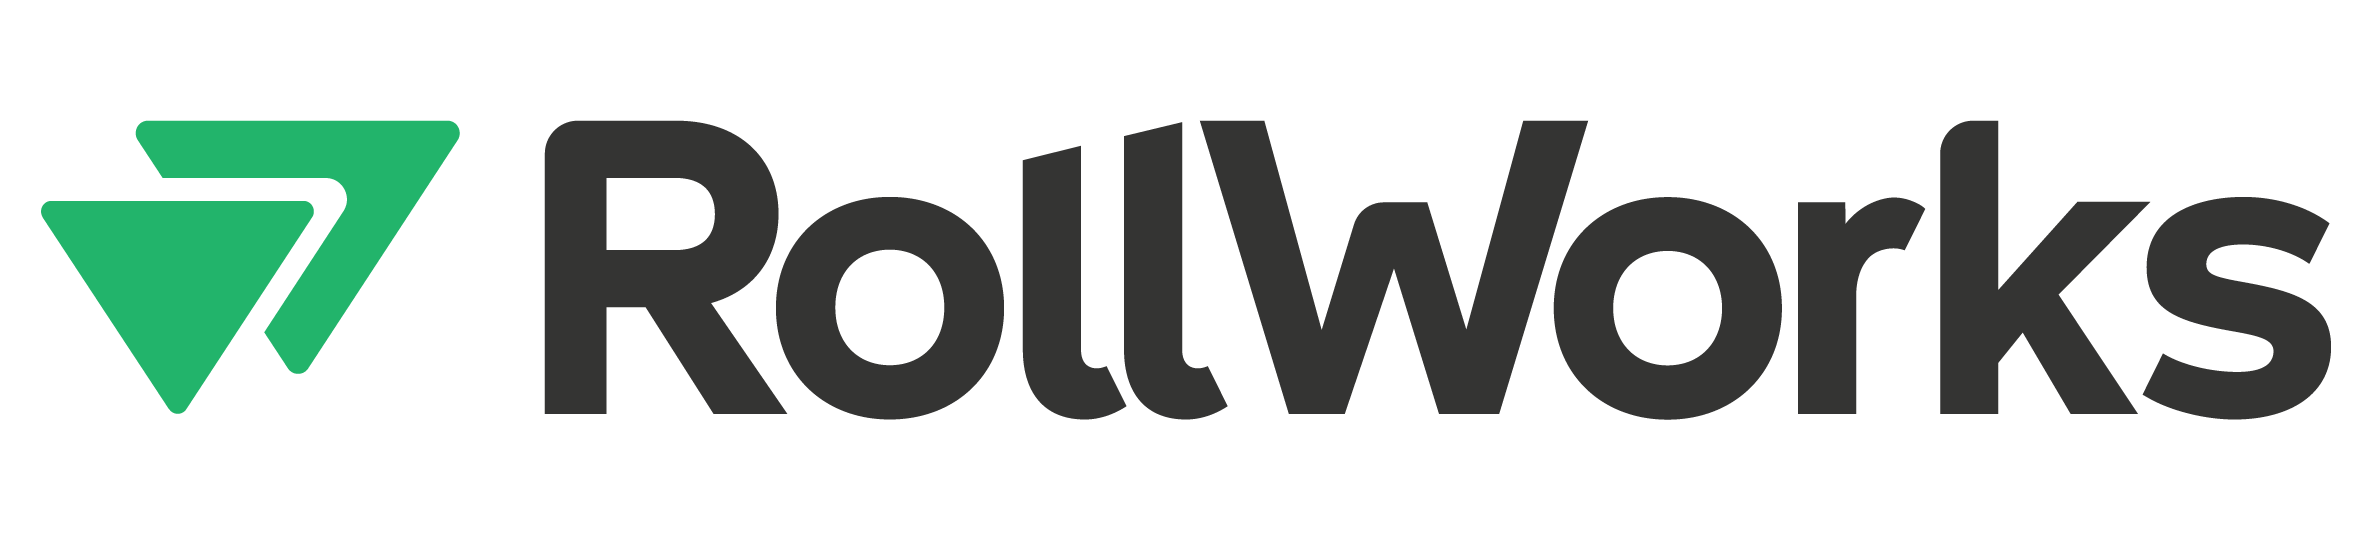 RollWorks-fullcolor-logo-021821 (3) (1).png